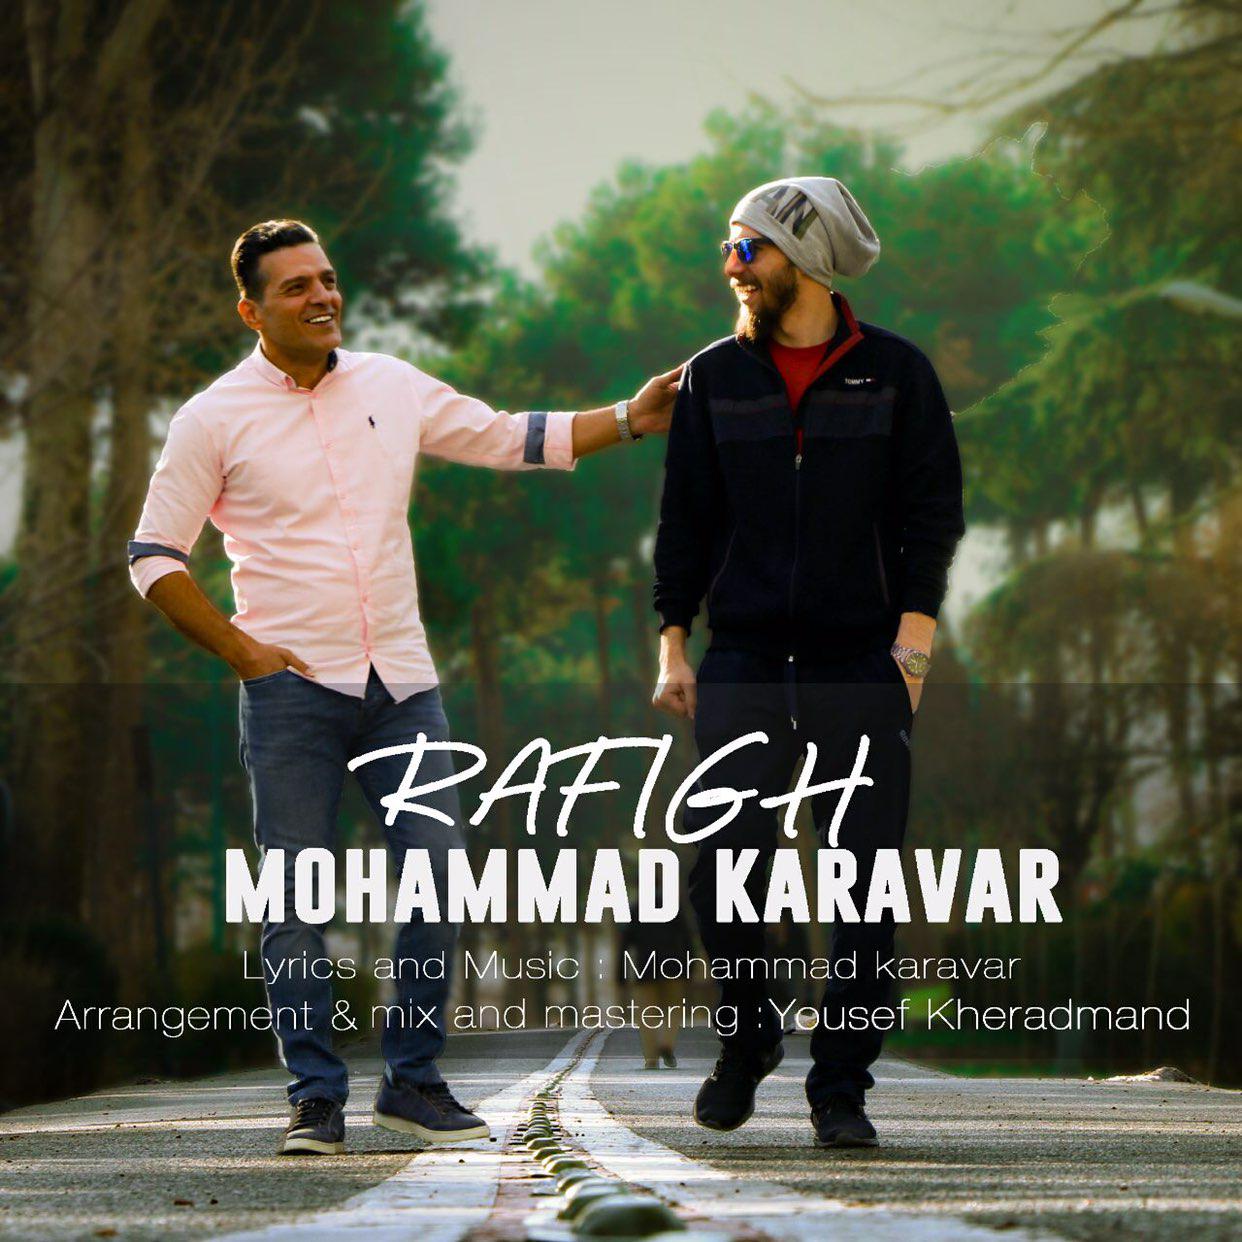  دانلود آهنگ جدید محمد کارآور - رفیق | Download New Music By Mohammad Karavar - Rafigh